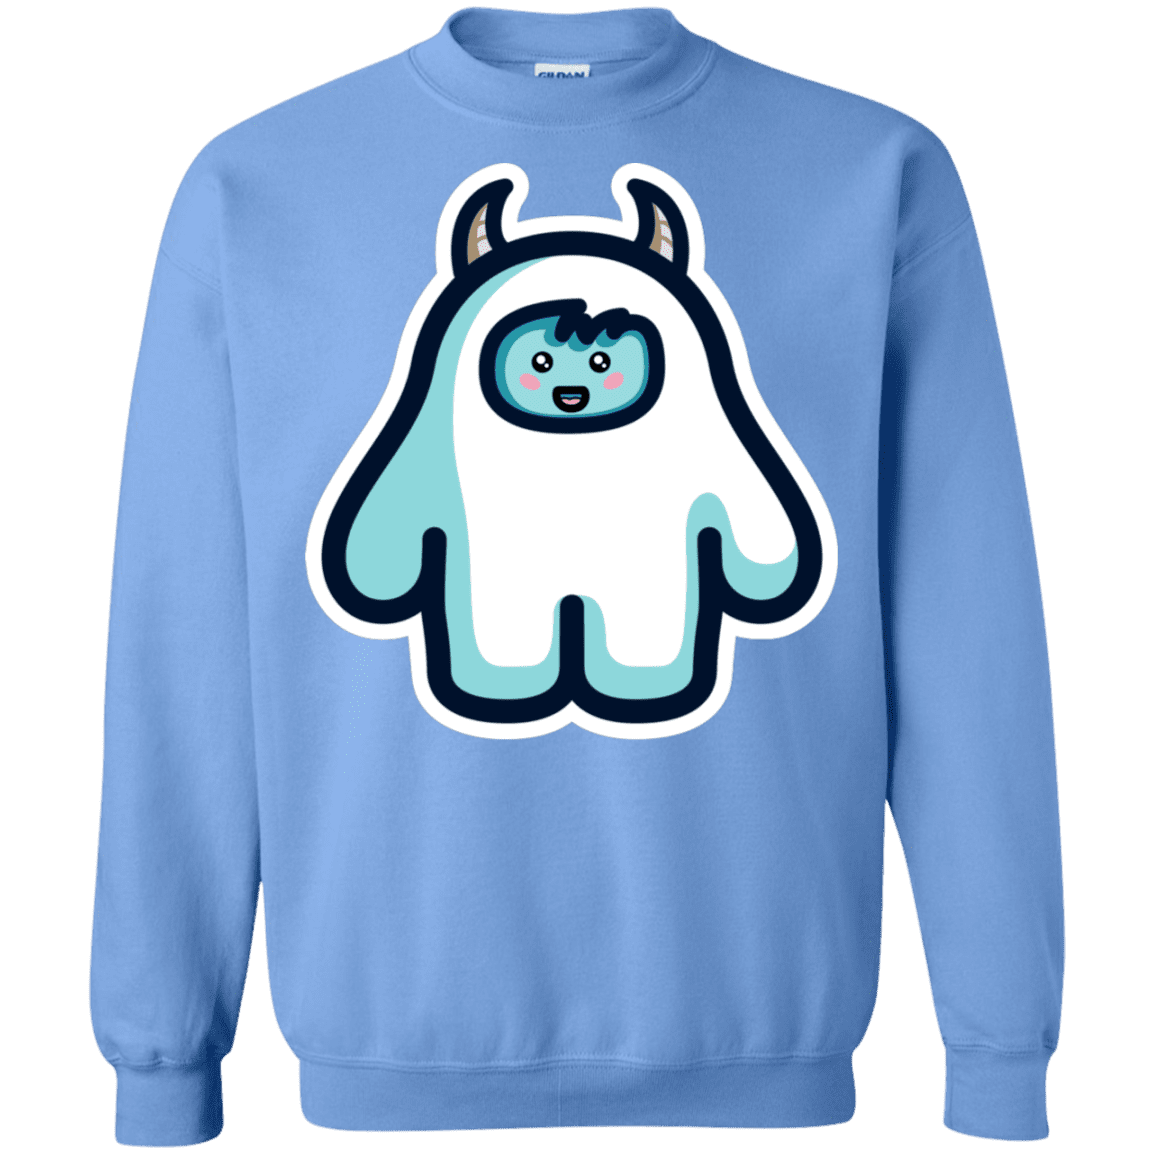 Sweatshirts Carolina Blue / S Kawaii Cute Yeti Crewneck Sweatshirt